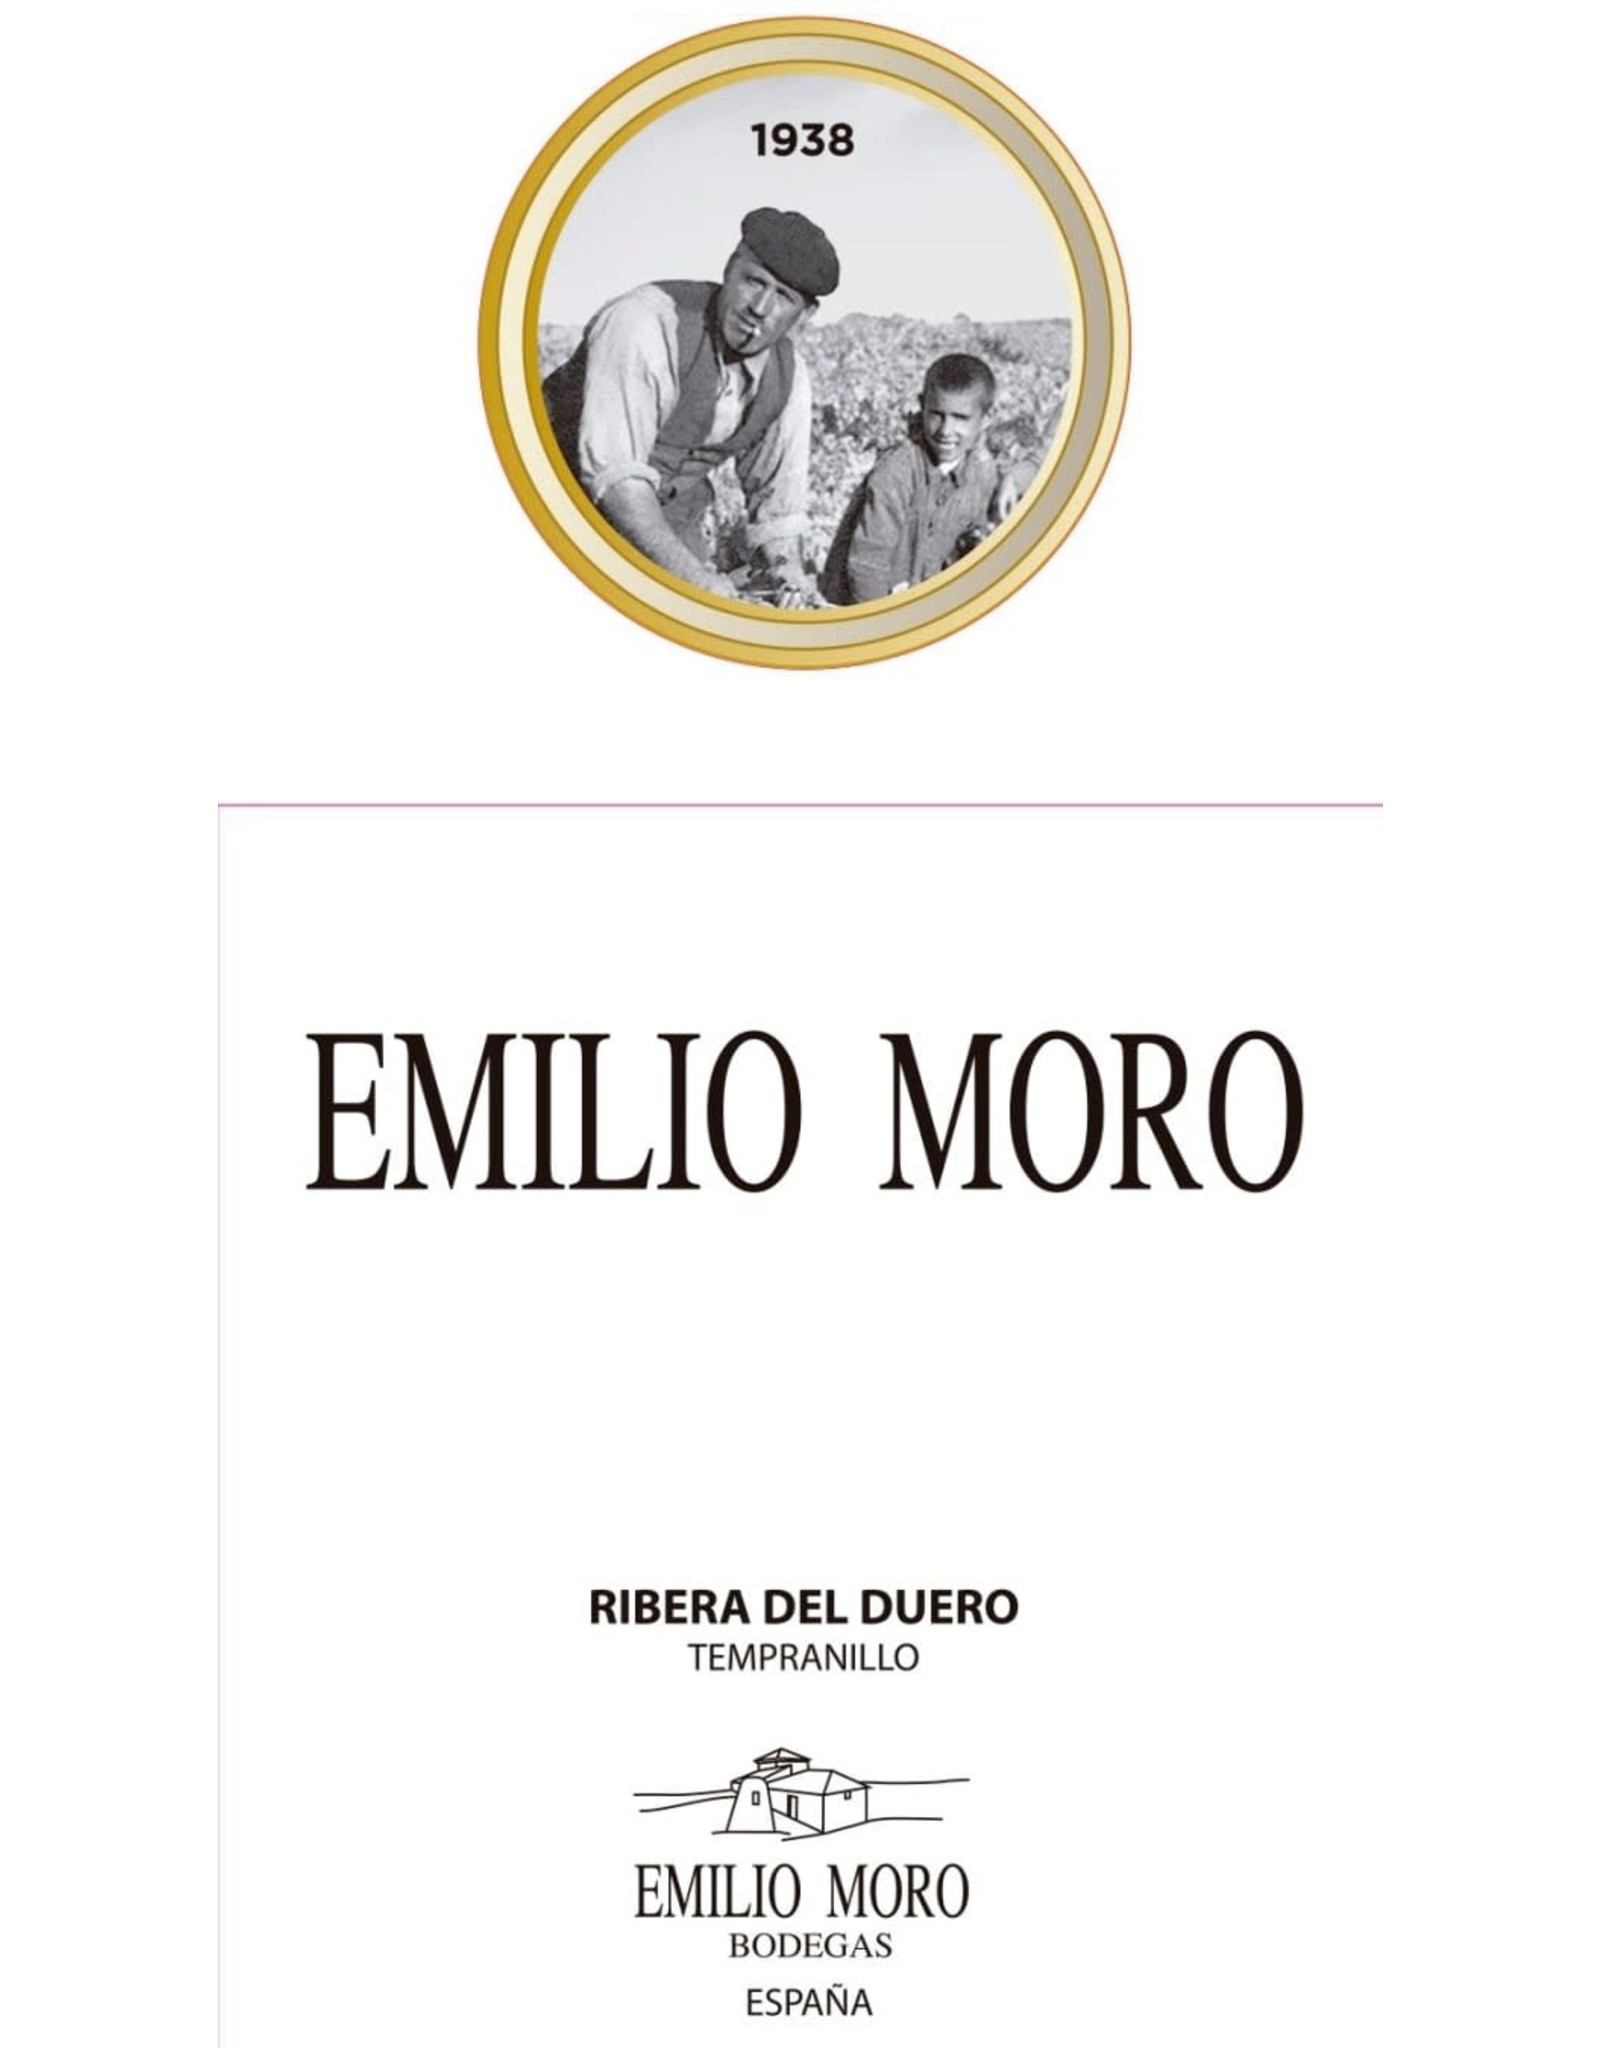 Emilio Moro Tempranillo, Ribera del Duero 2018